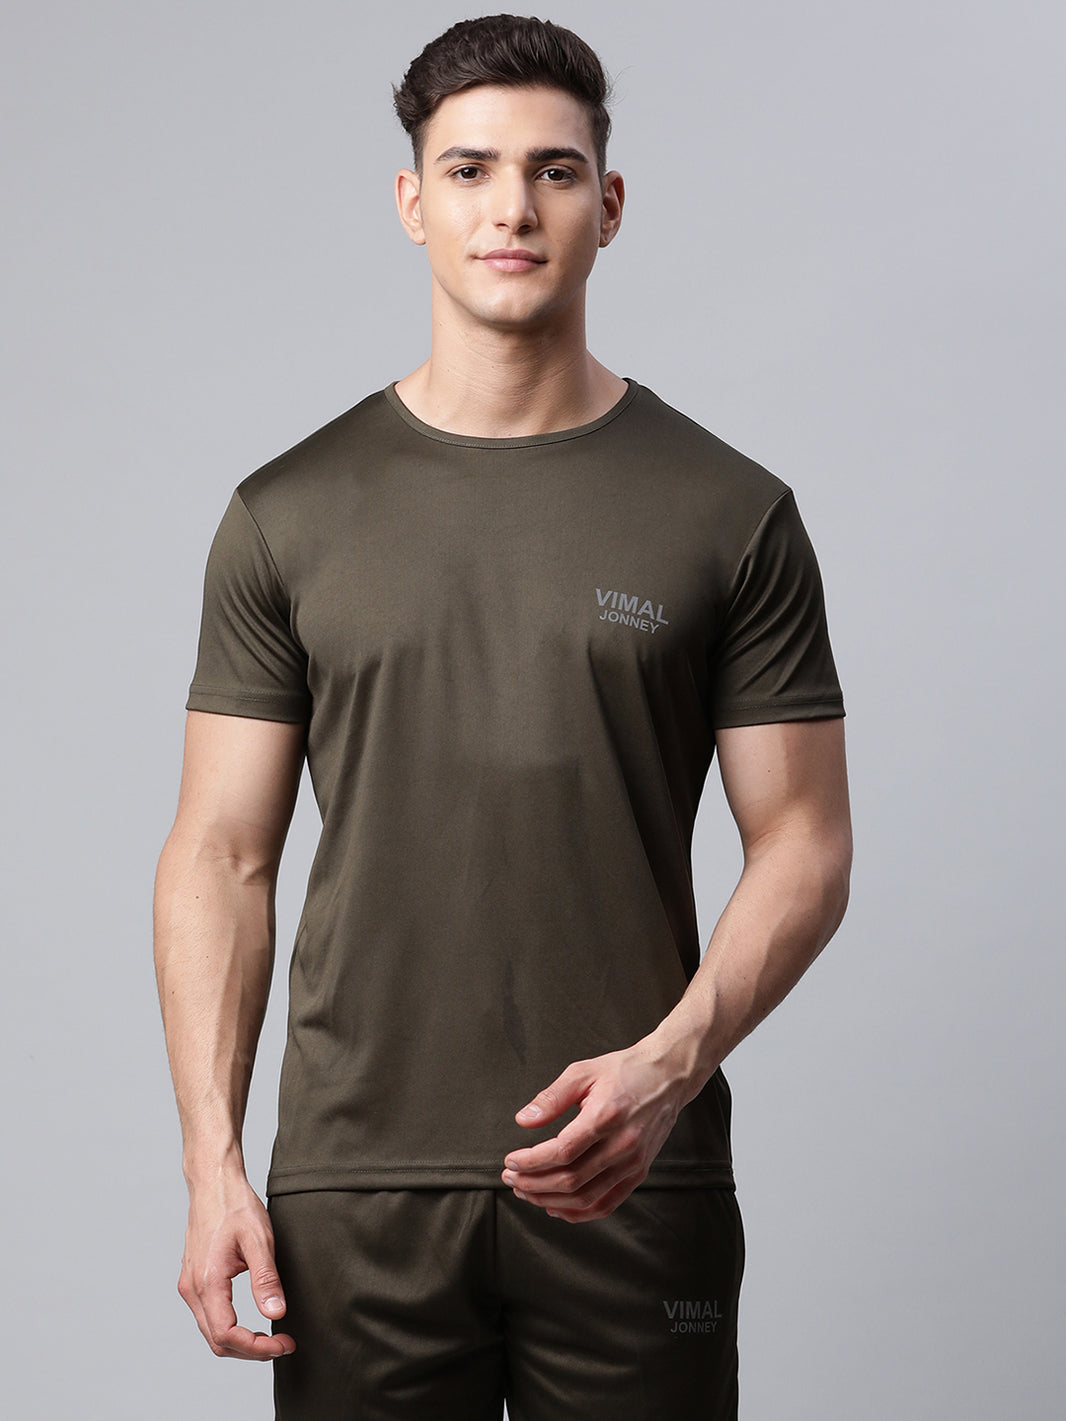 Vimal Jonney Dryfit Solid Olive T-shirt for Men